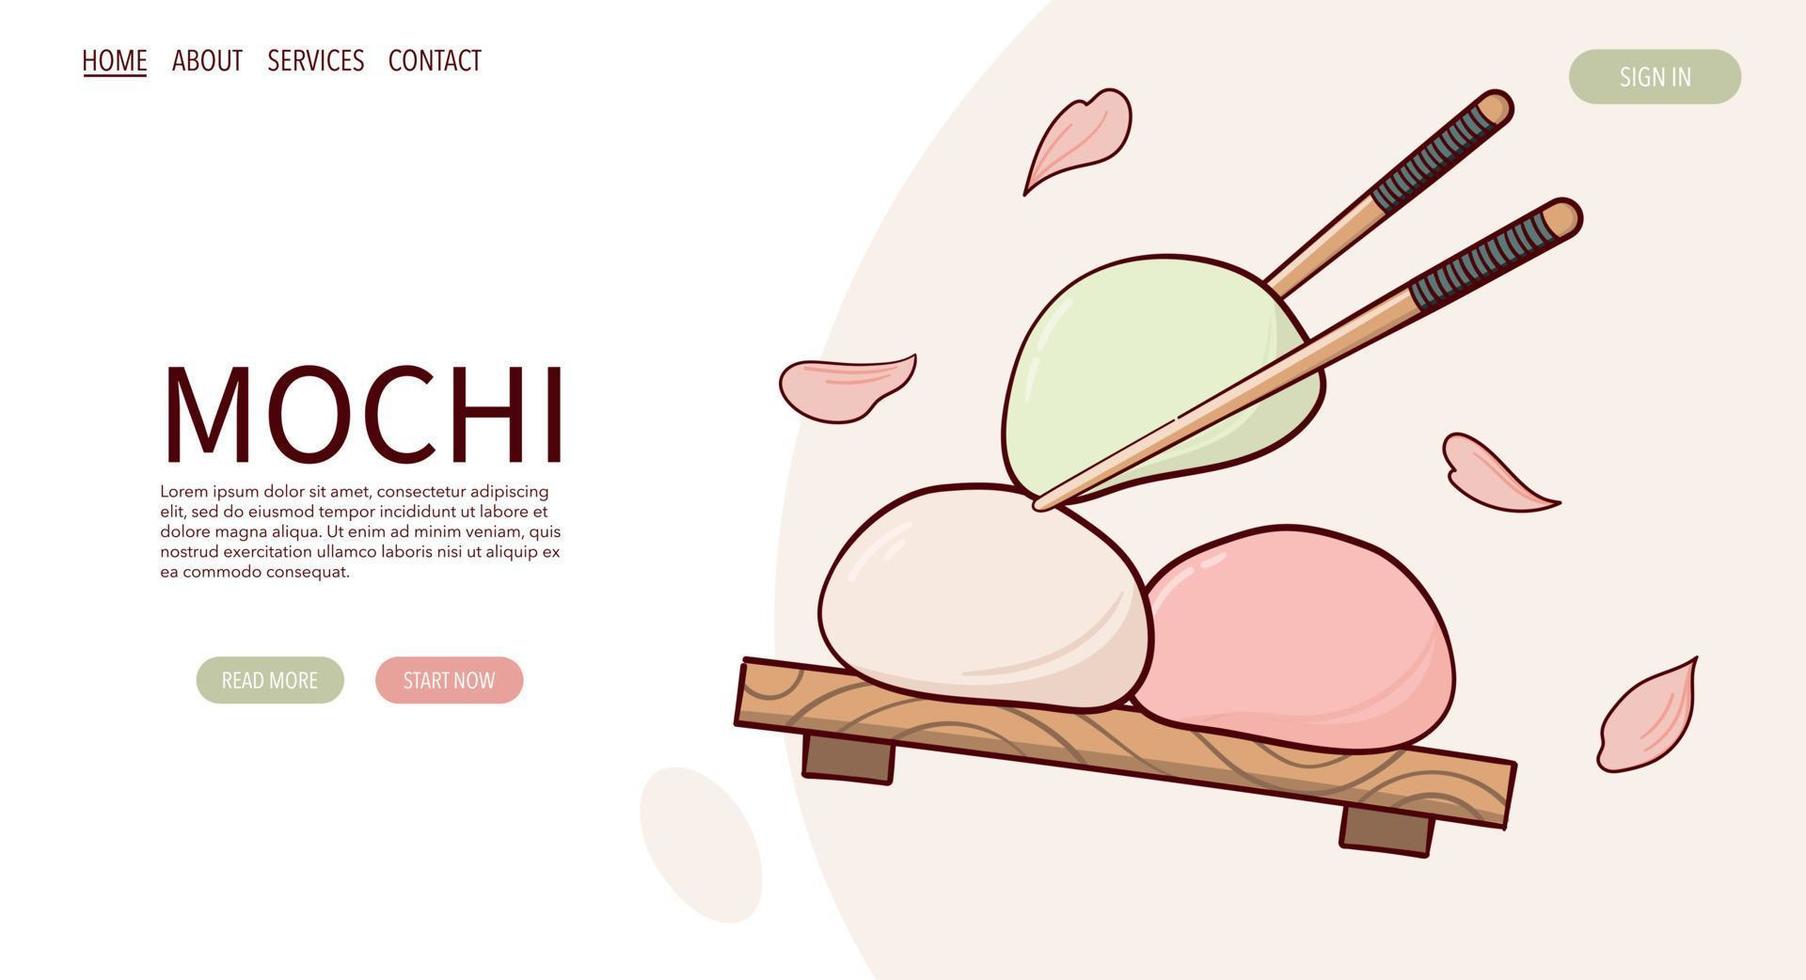 página da web desenhar fjapan tradição doce mochi ilustração vetorial. comida tradicional asiática japonesa, culinária, conceito de menu. banner, site, publicidade no estilo cartoon doodle. vetor